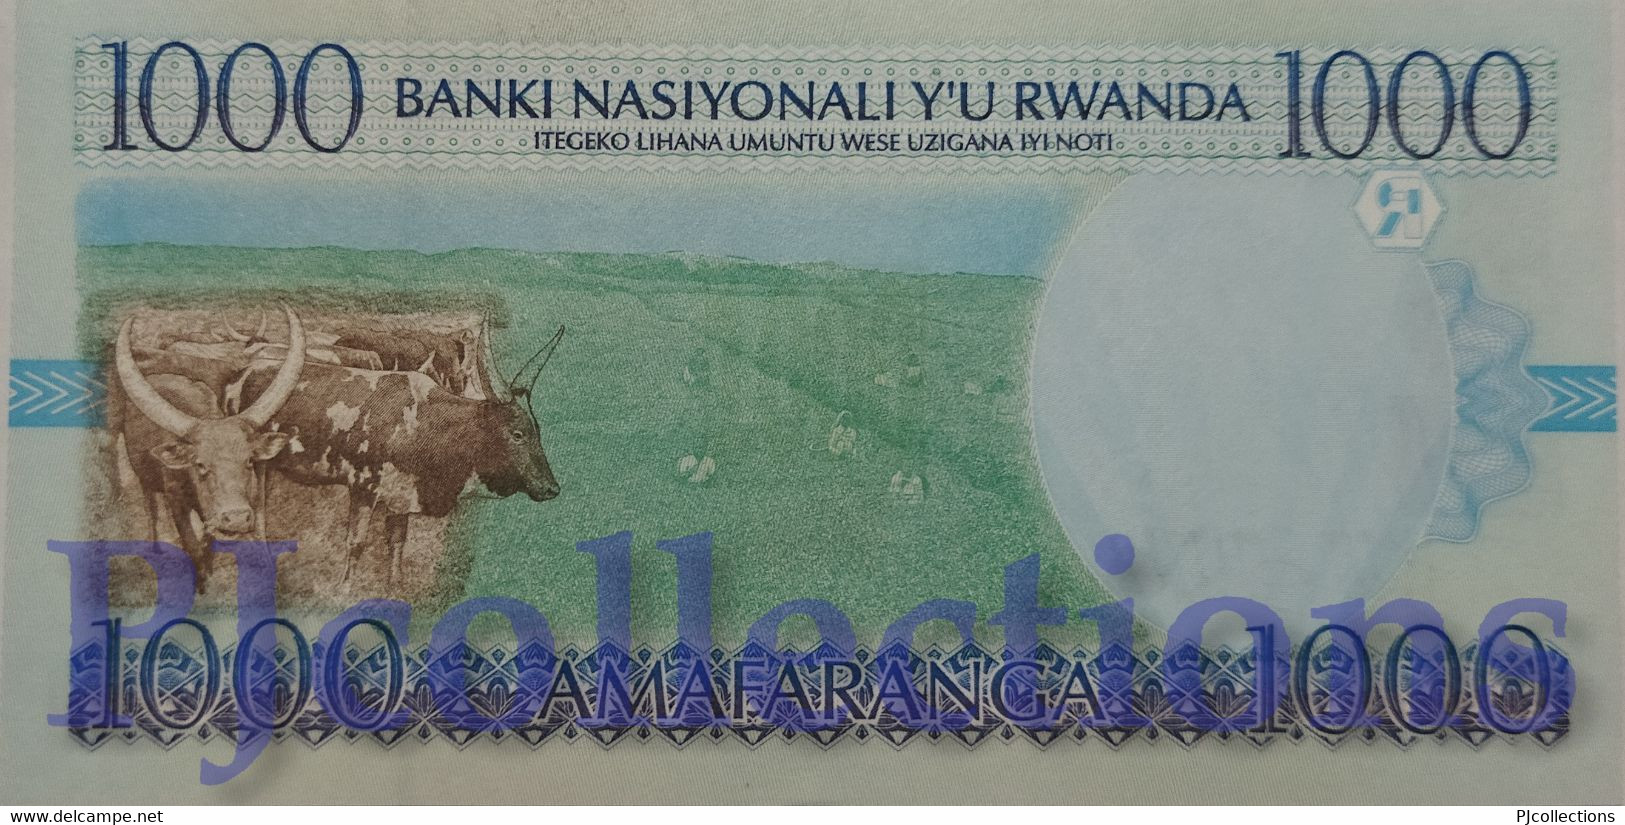 RWANDA 1000 FRANCS 1998 PICK 27a UNC - Ruanda